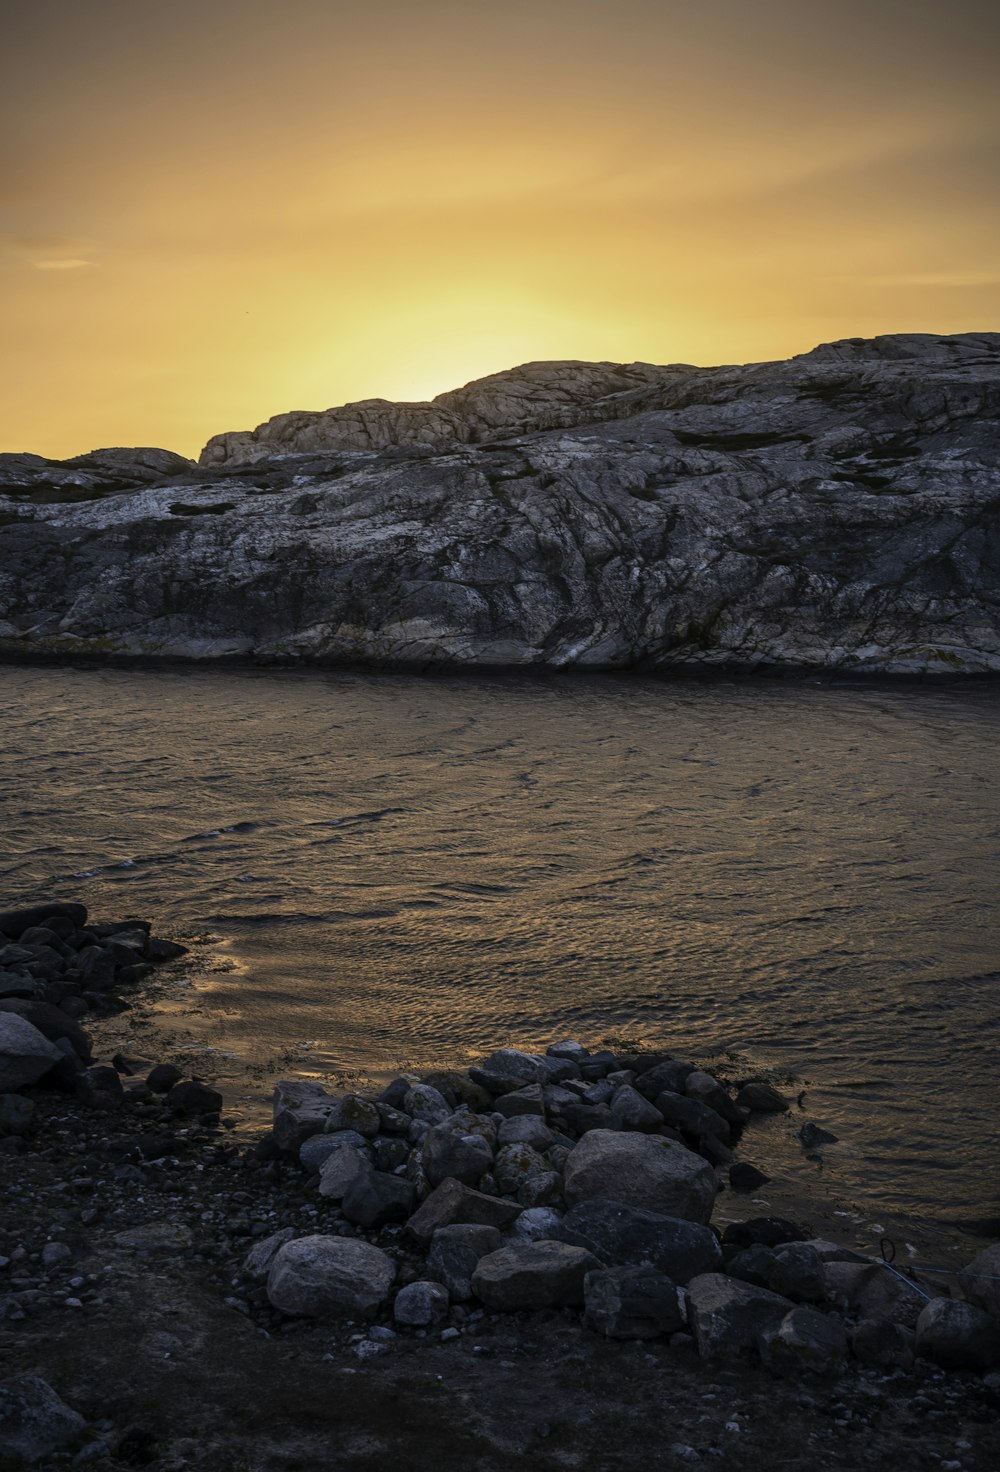 Montagna rocciosa marrone accanto allo specchio d'acqua durante il tramonto